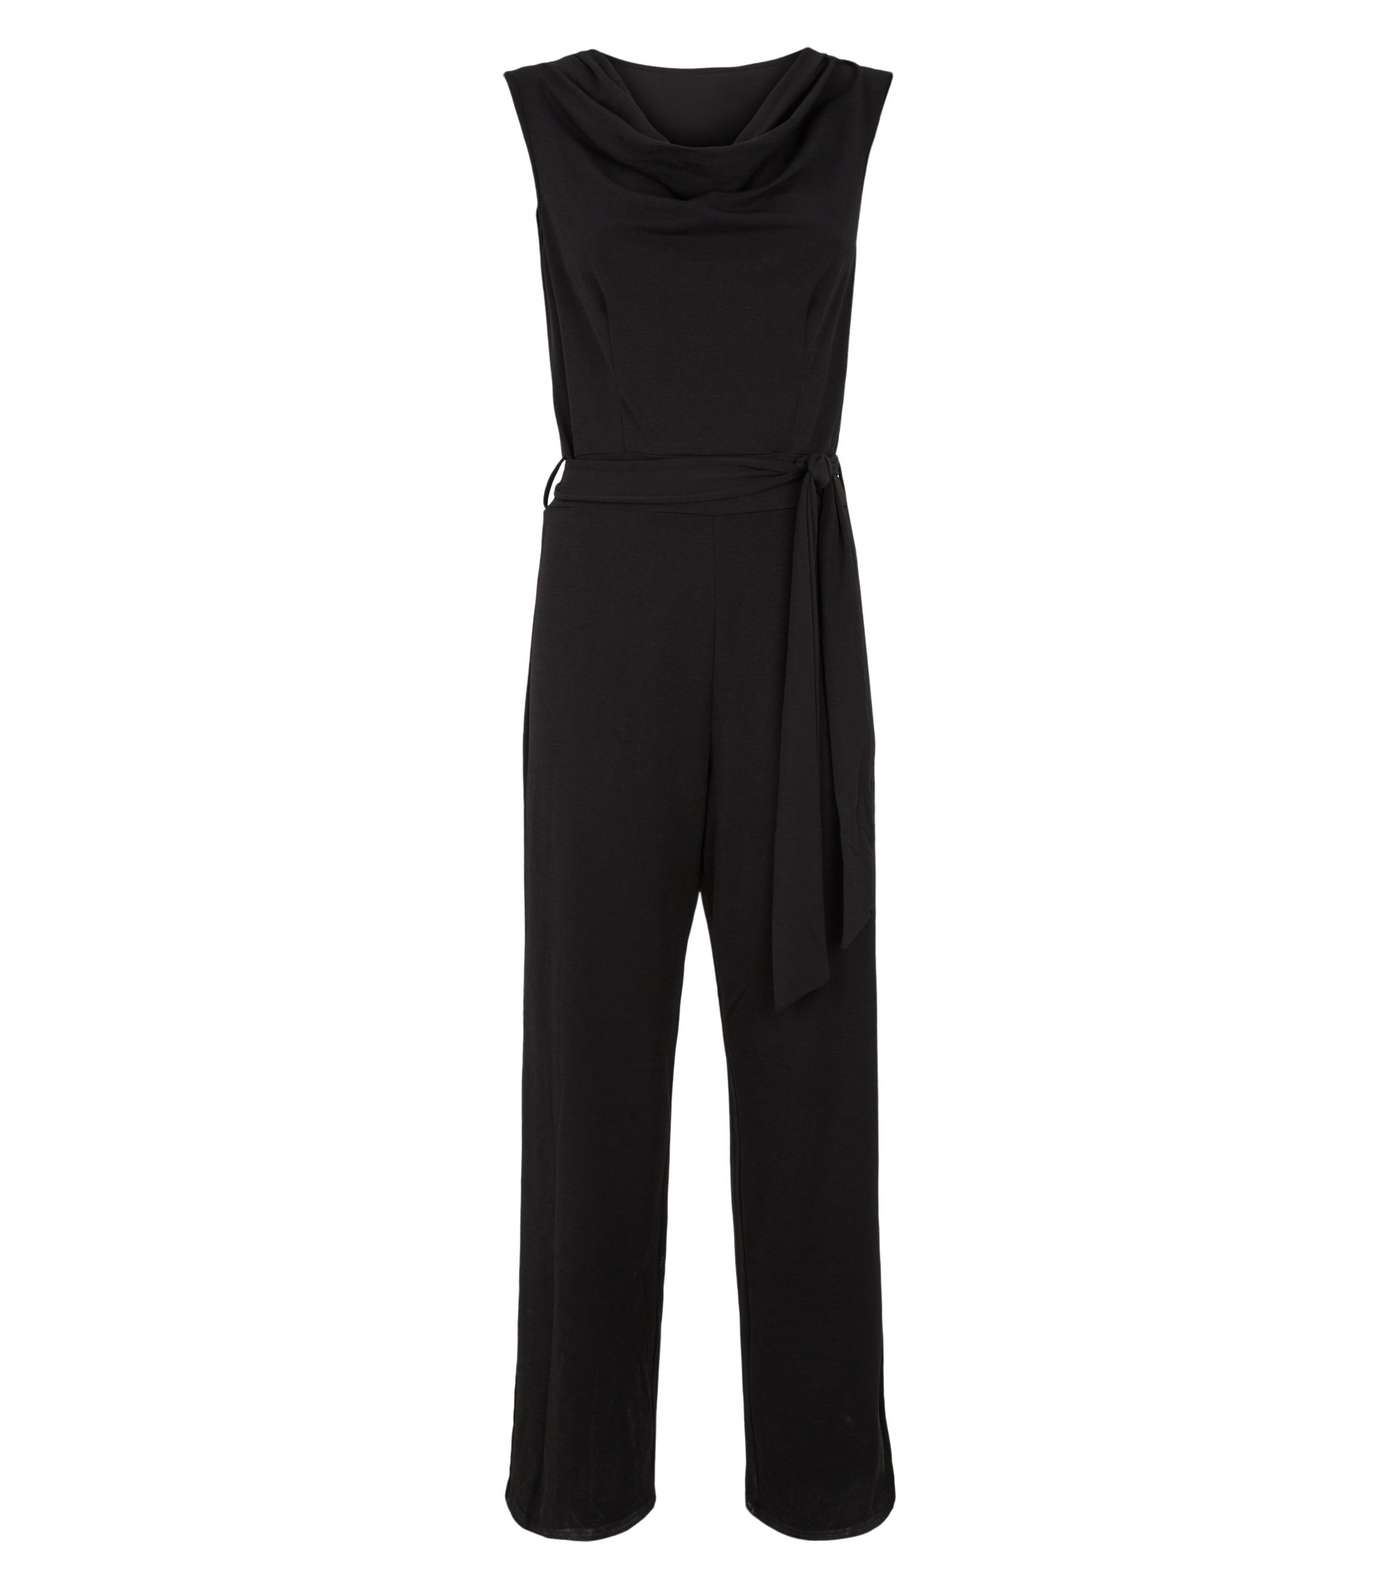 Mela Black Cowl Neck Sleeveless Jumpsuit Image 4